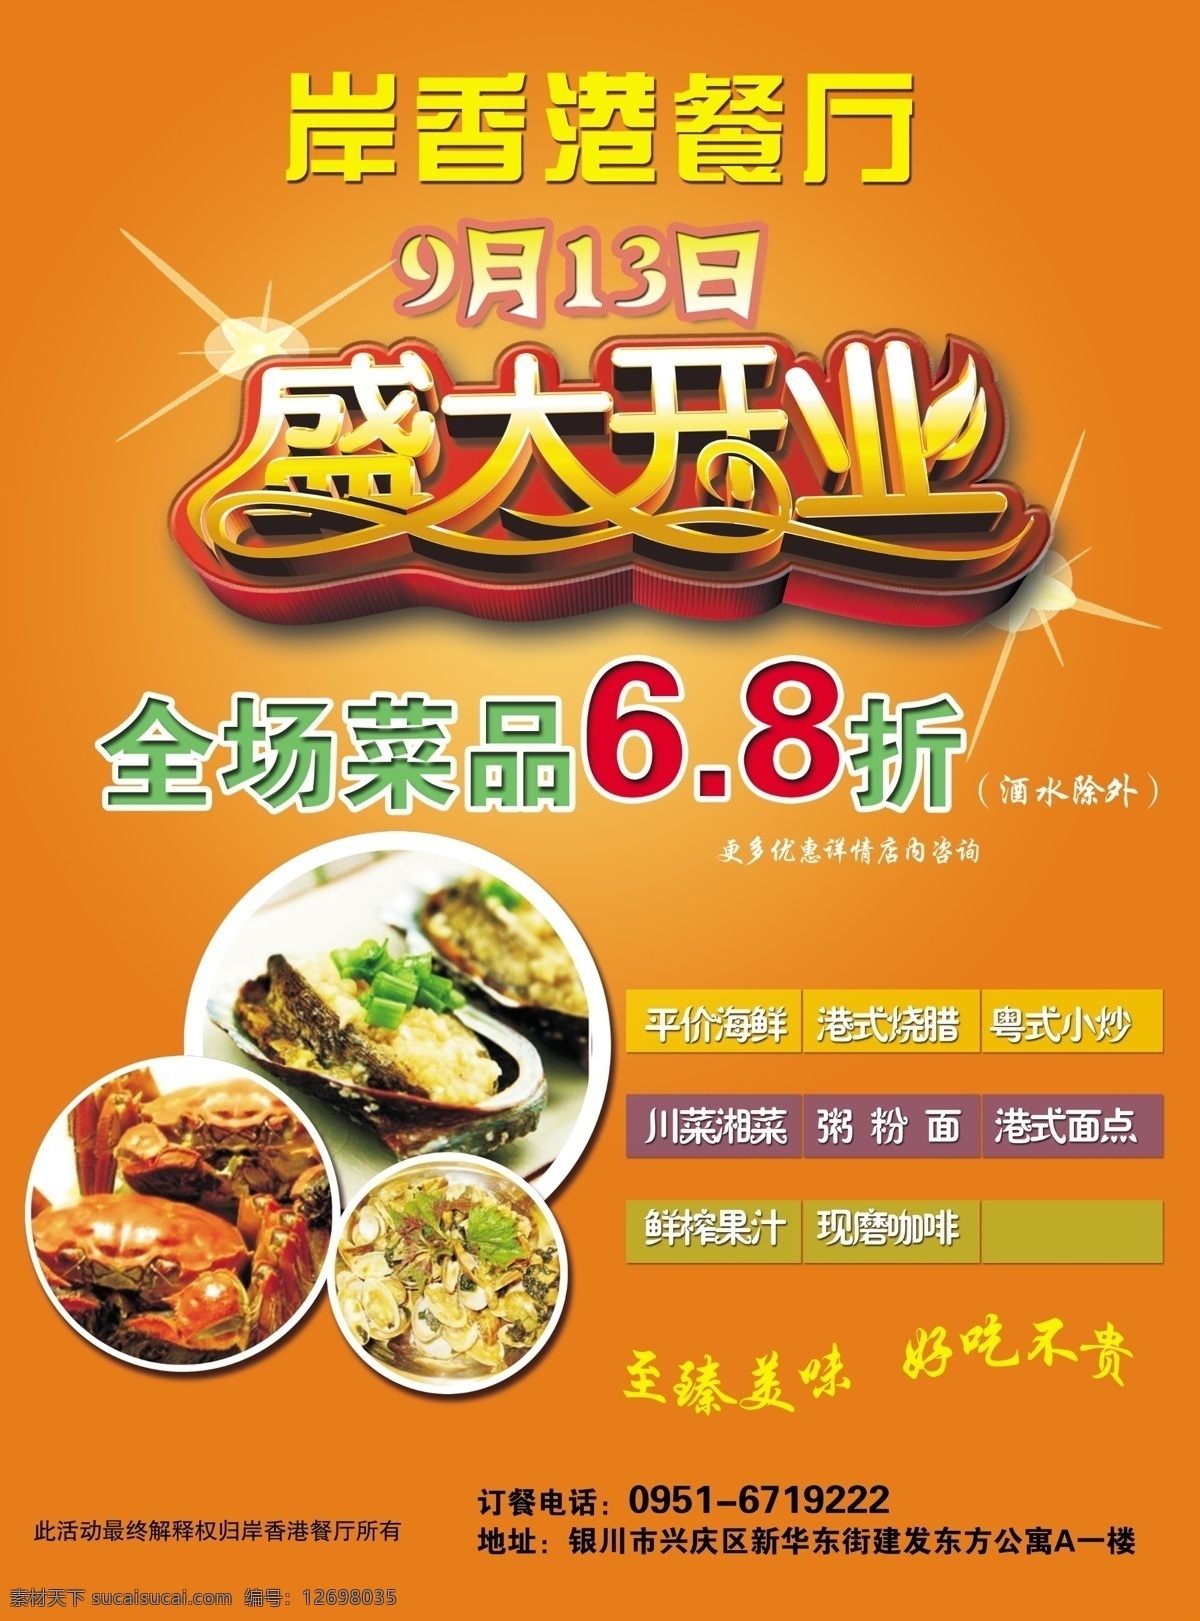 岸香港餐厅 盛大开业 港餐厅 彩页 饭店 开业大吉 美食 dm宣传单